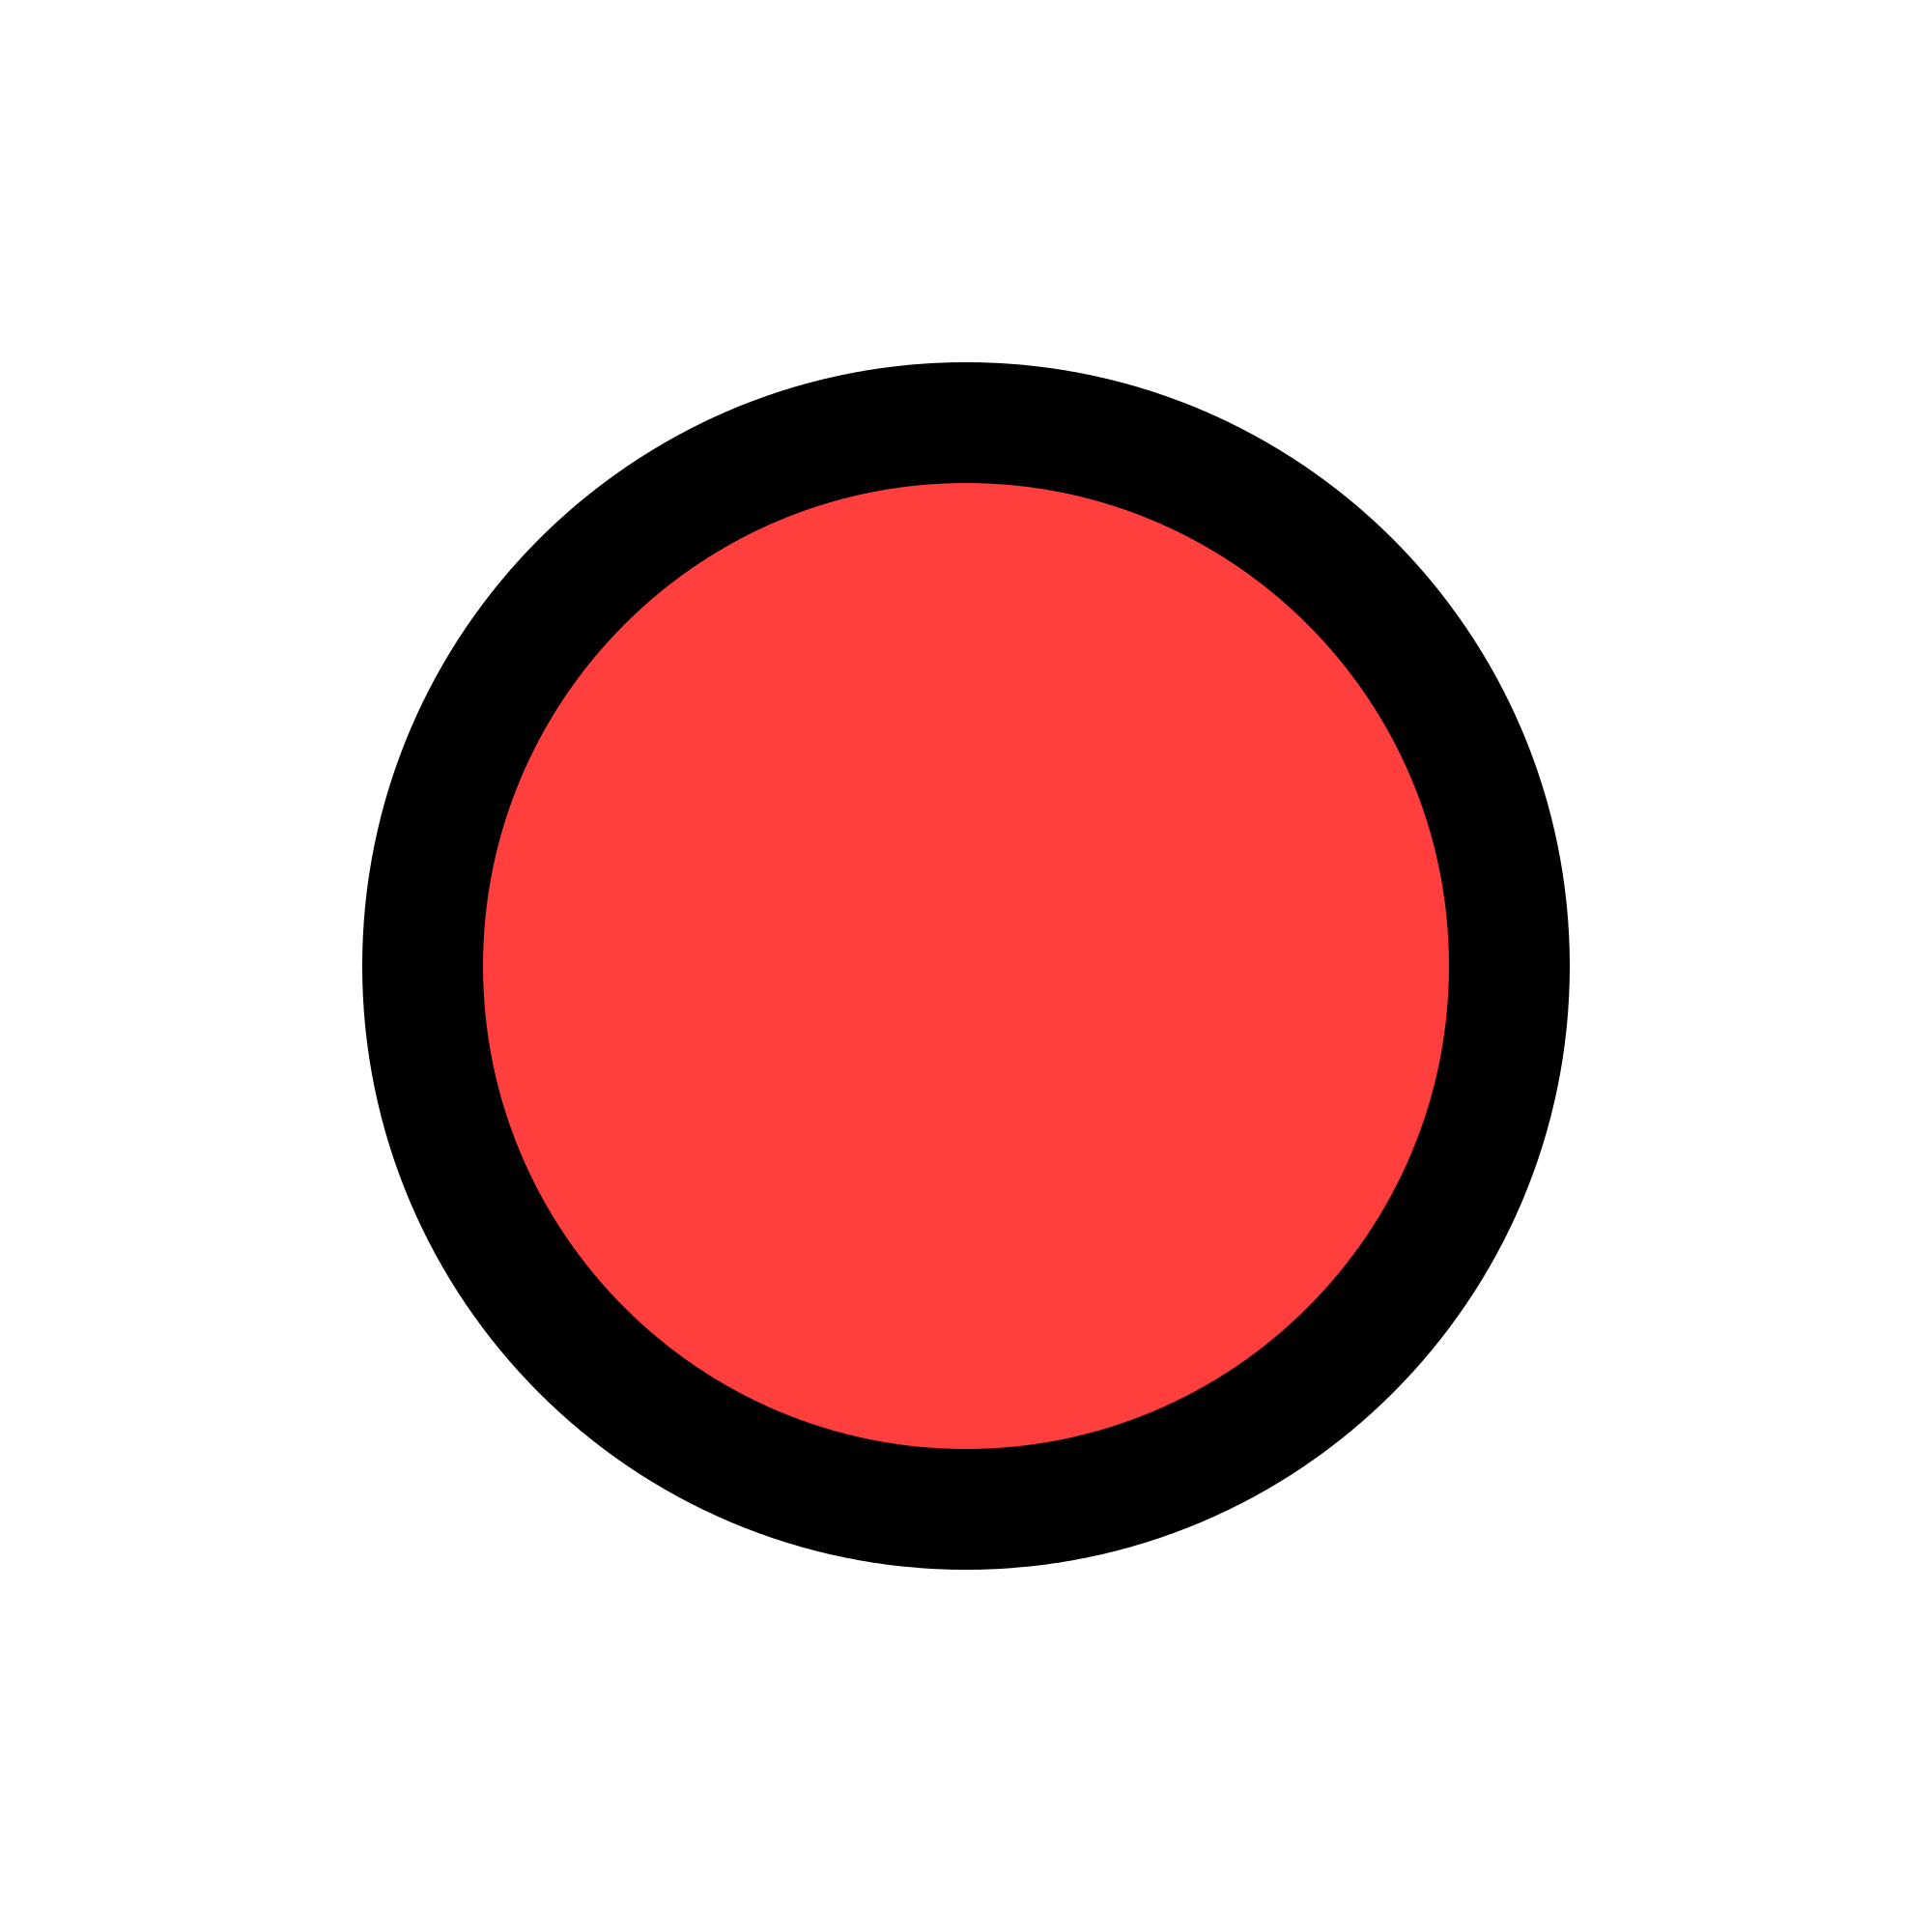 Red and White Dot Logo - Big red dot Logos